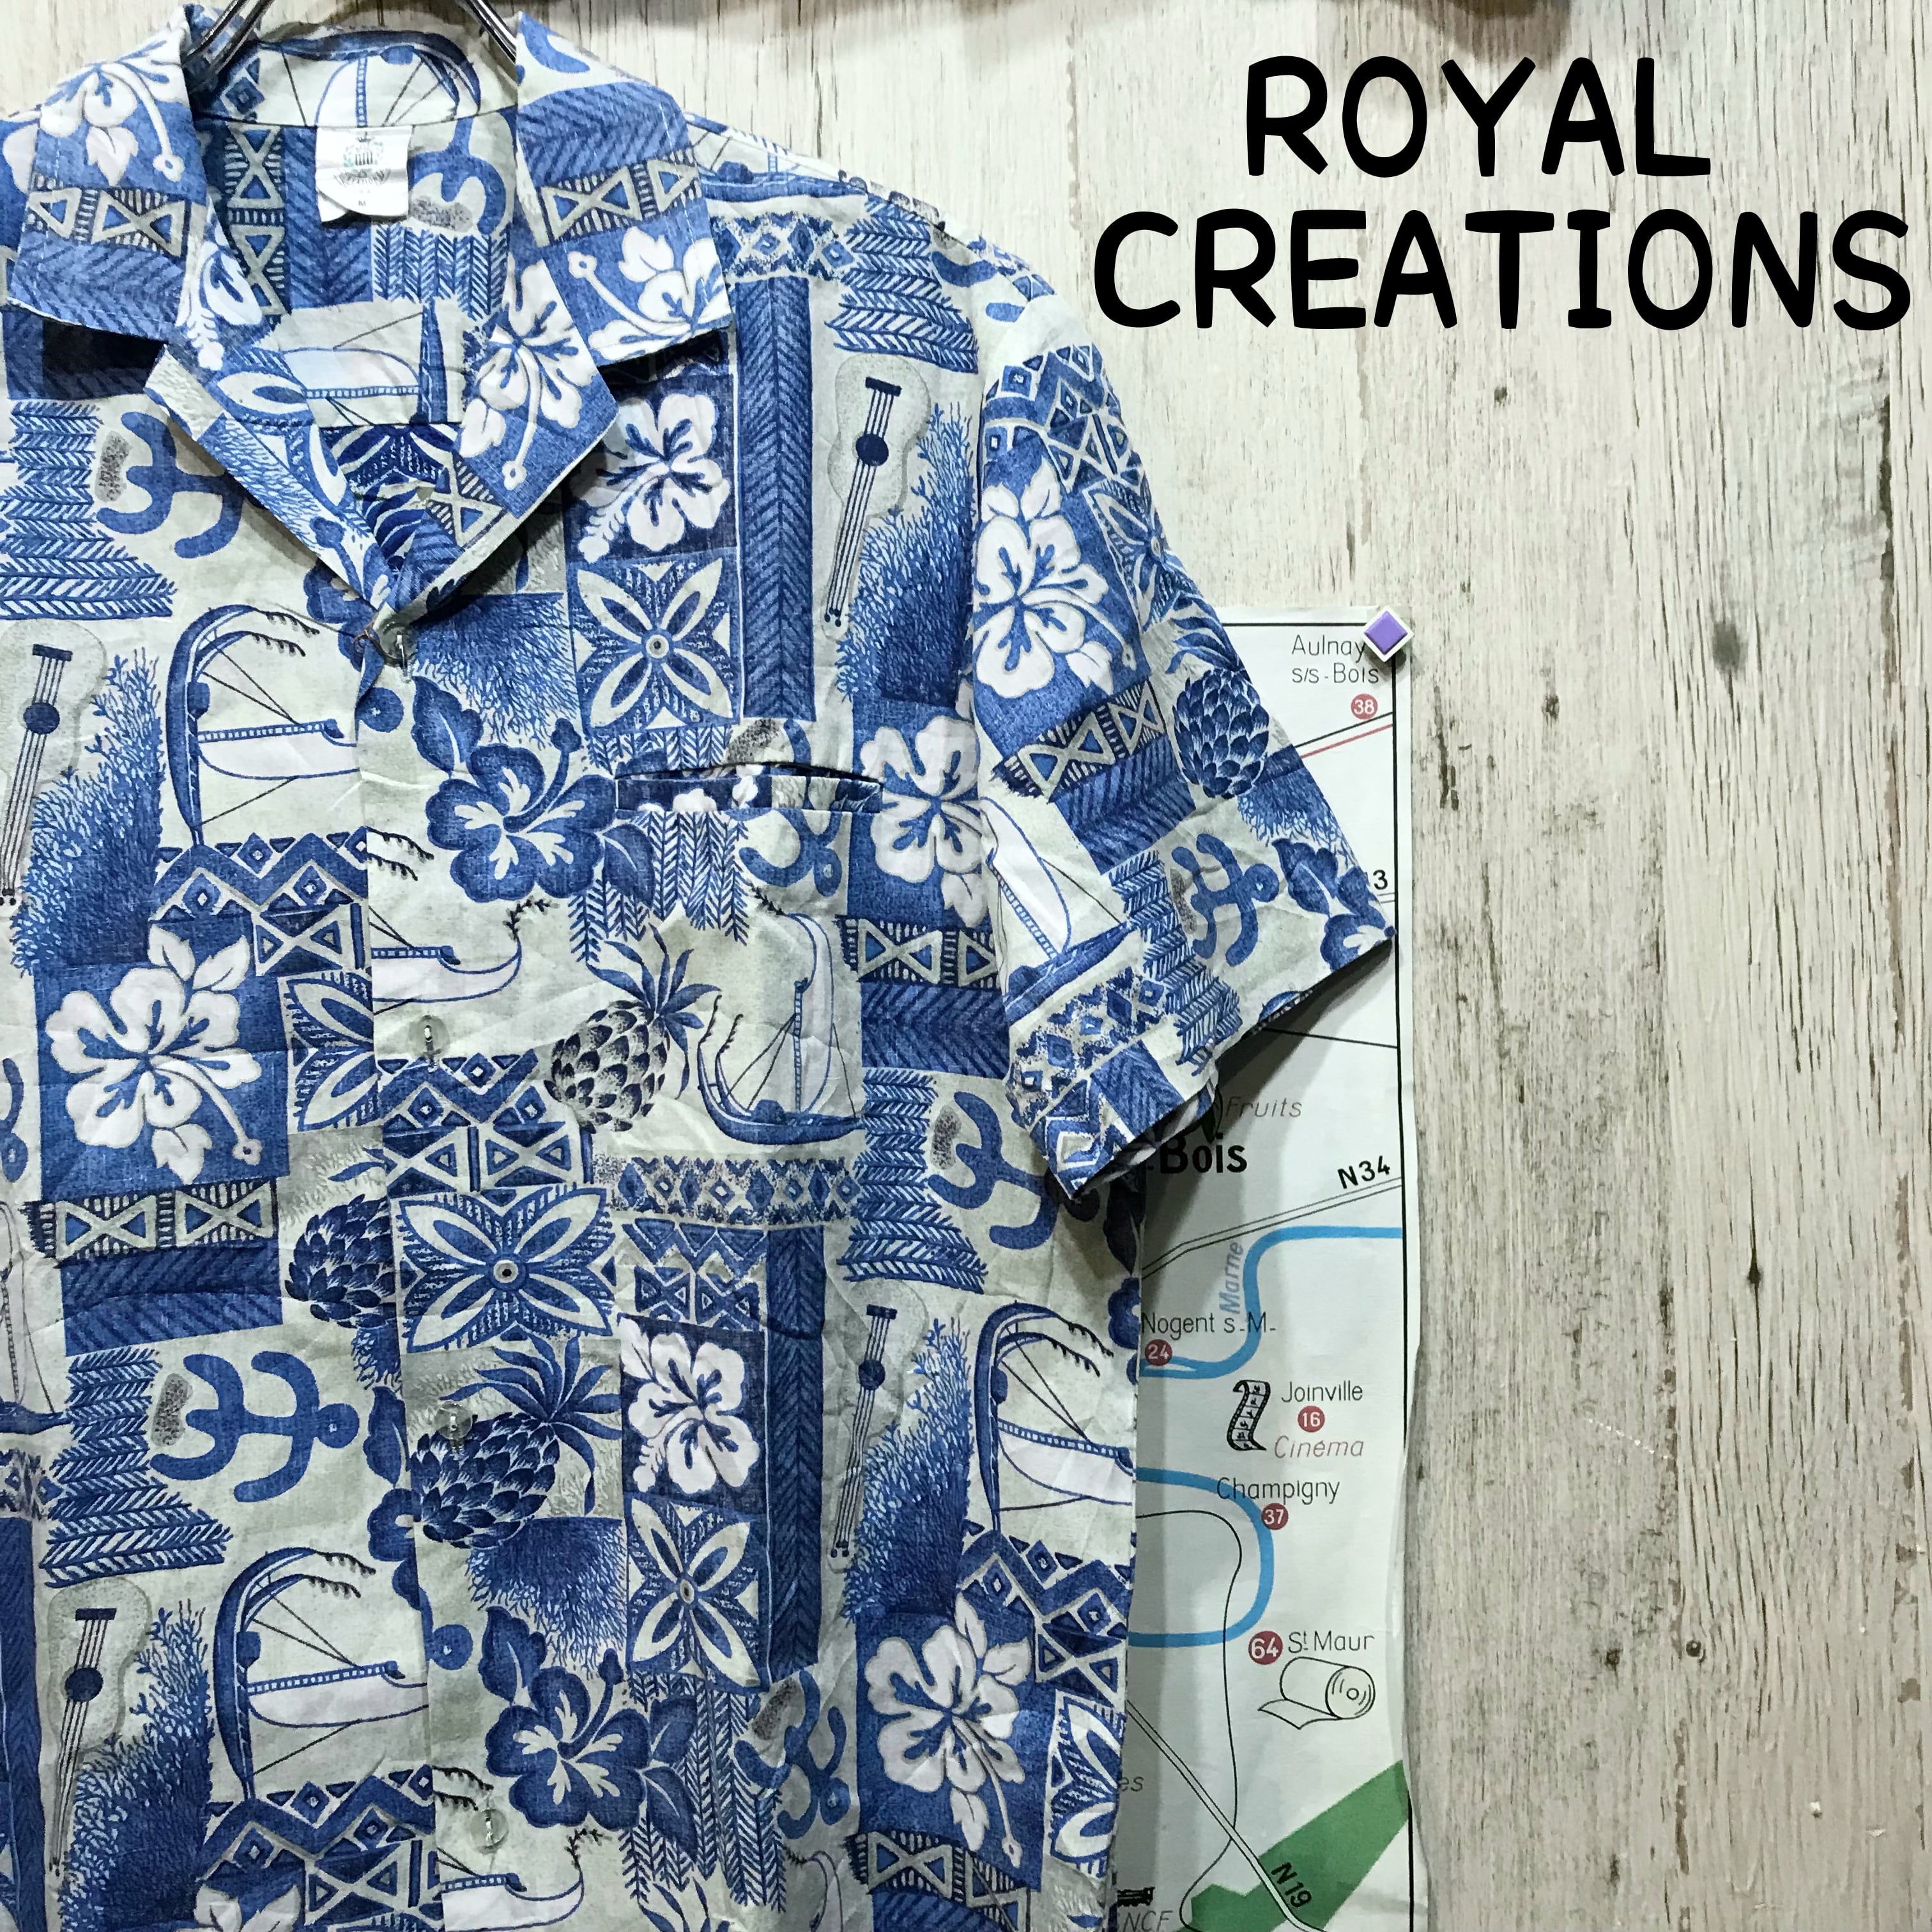 ROYAL CREATIONS ロイヤルクリエーションズ アロハシャツ M 古着 (992)